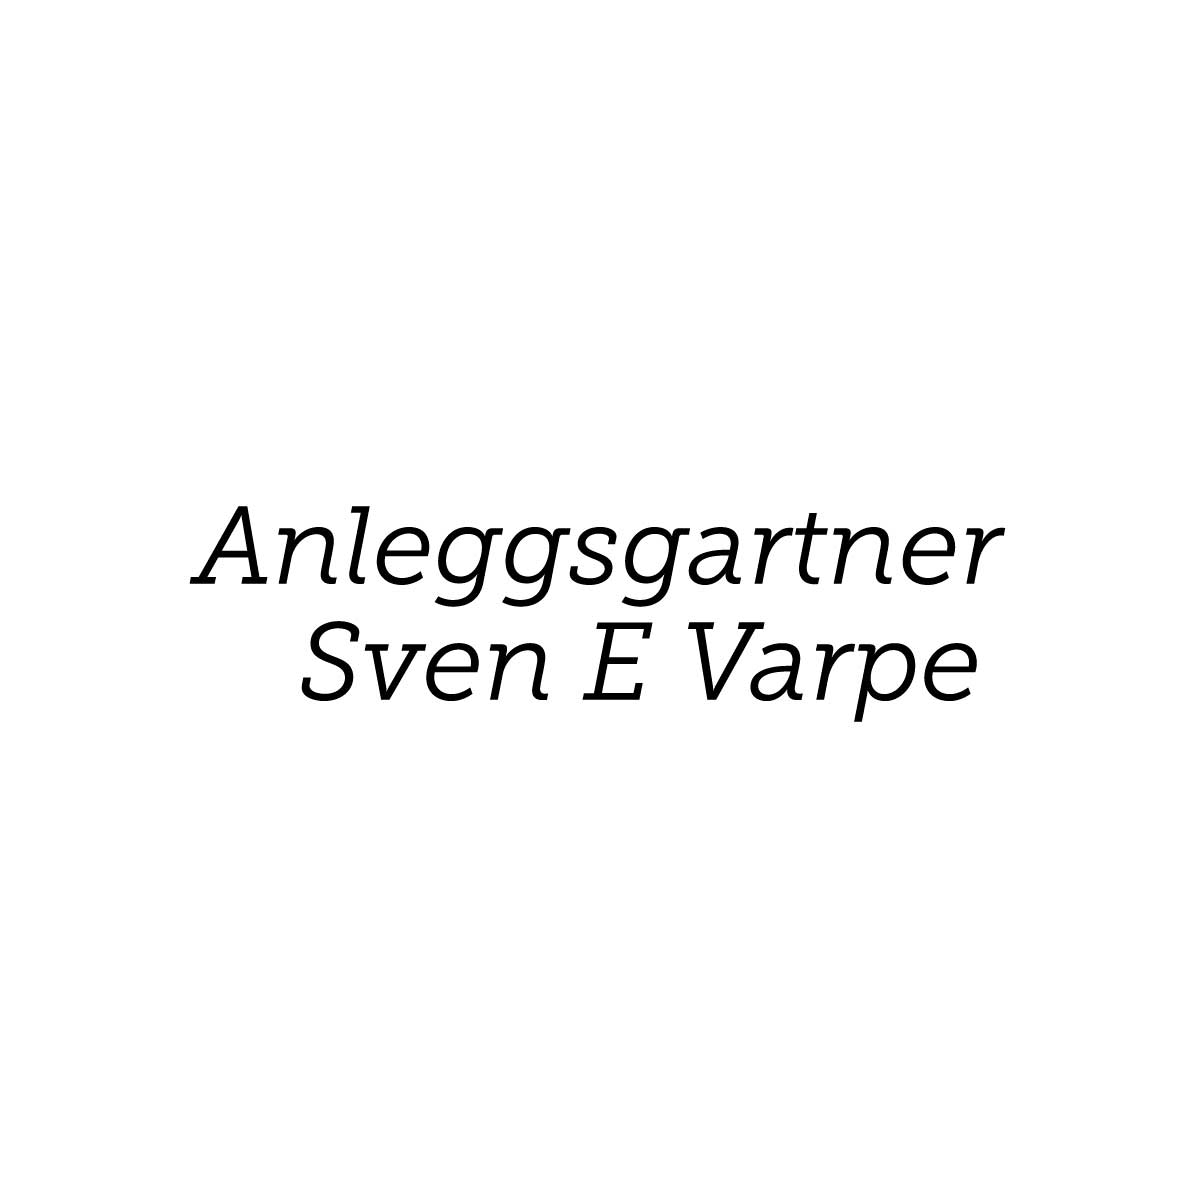 Anleggsgartner Sven E Varpe